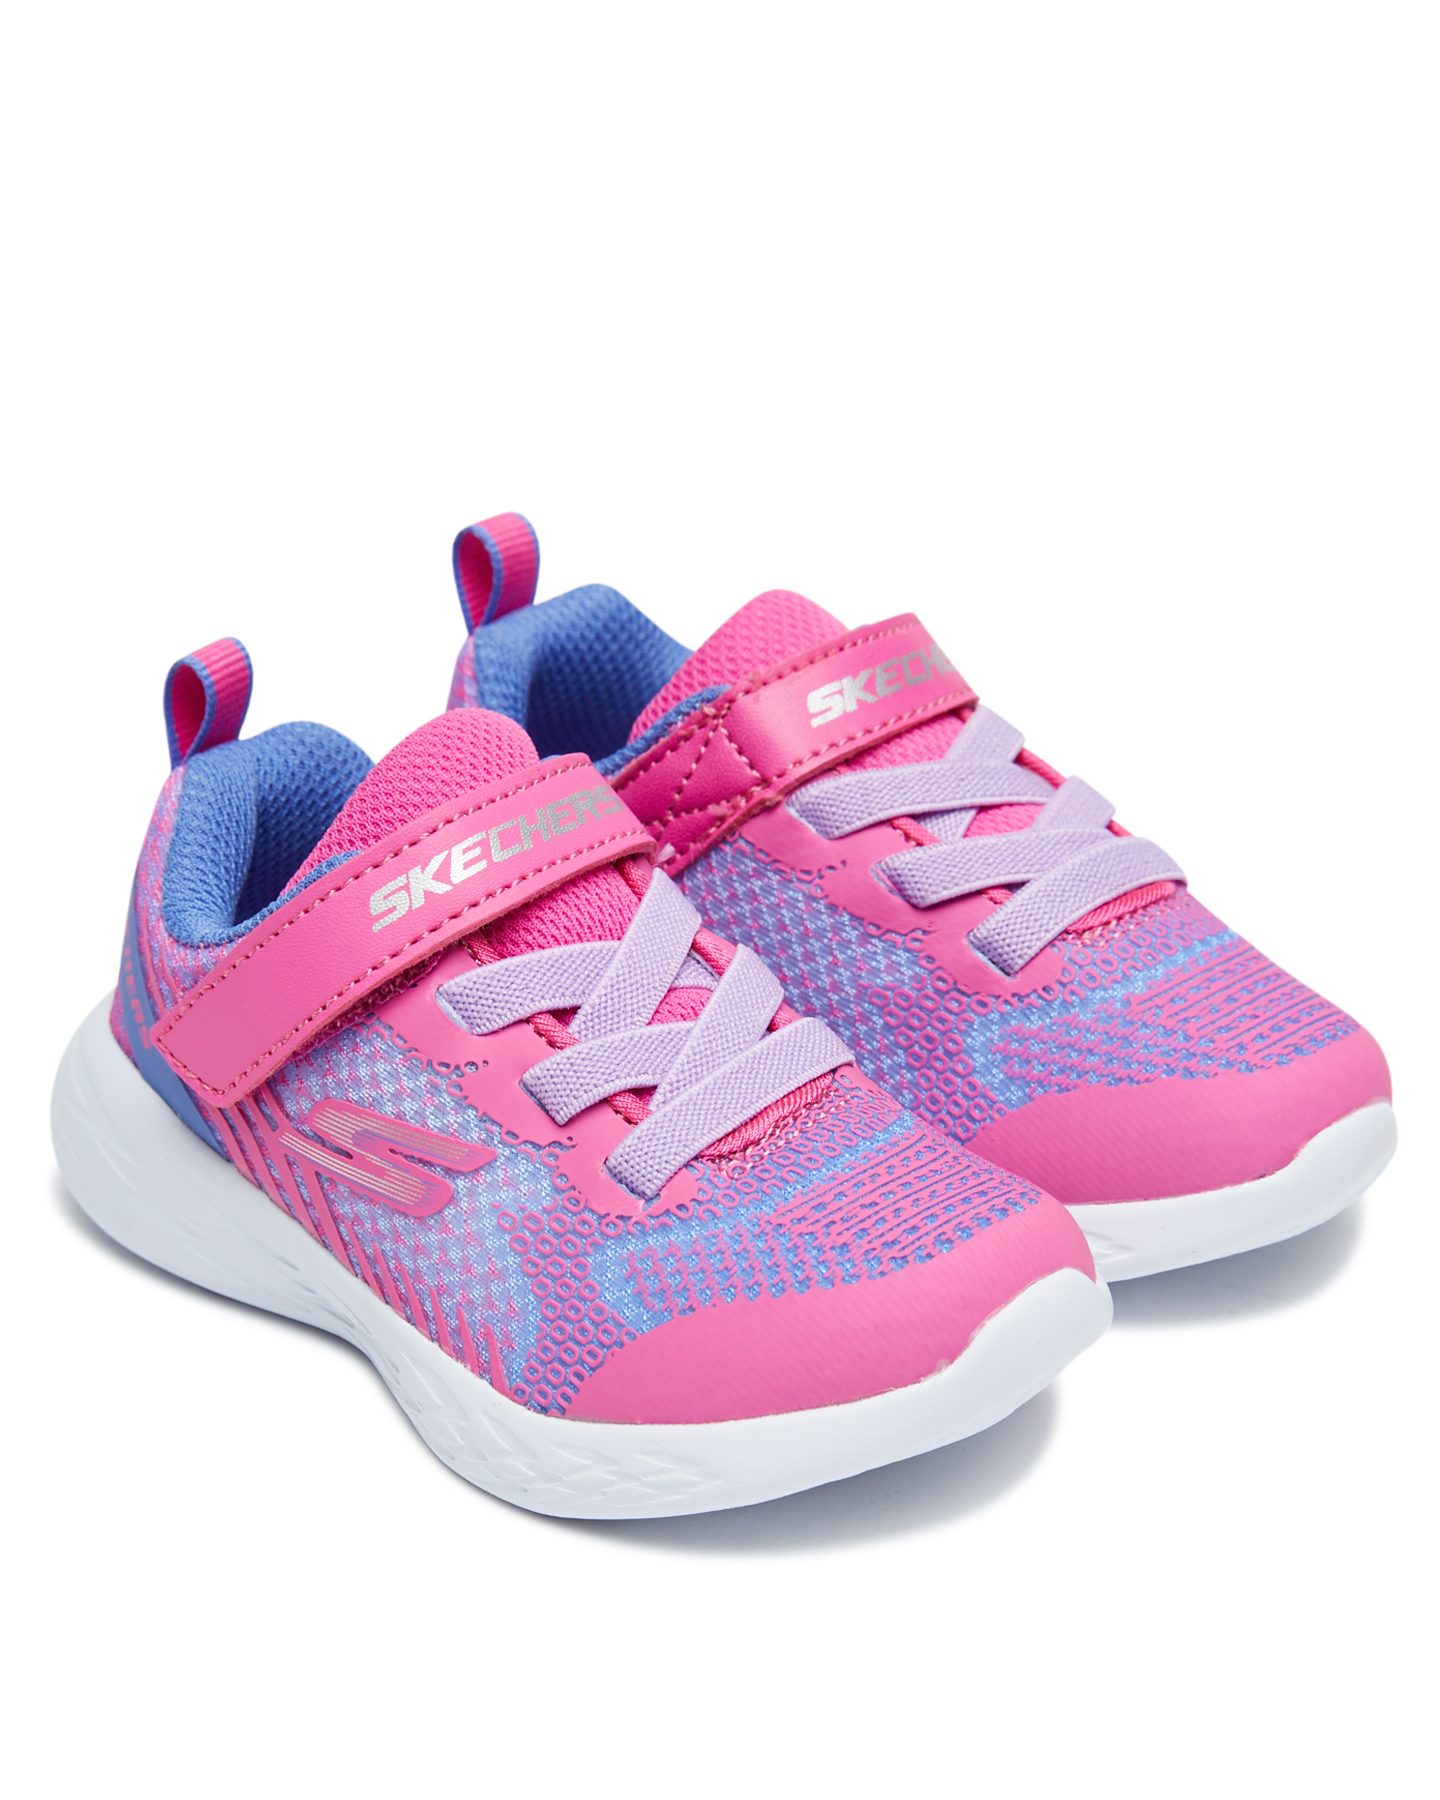 Skechers Go Run 600 Shoe - Toddler - Neon Pink | SurfStitch